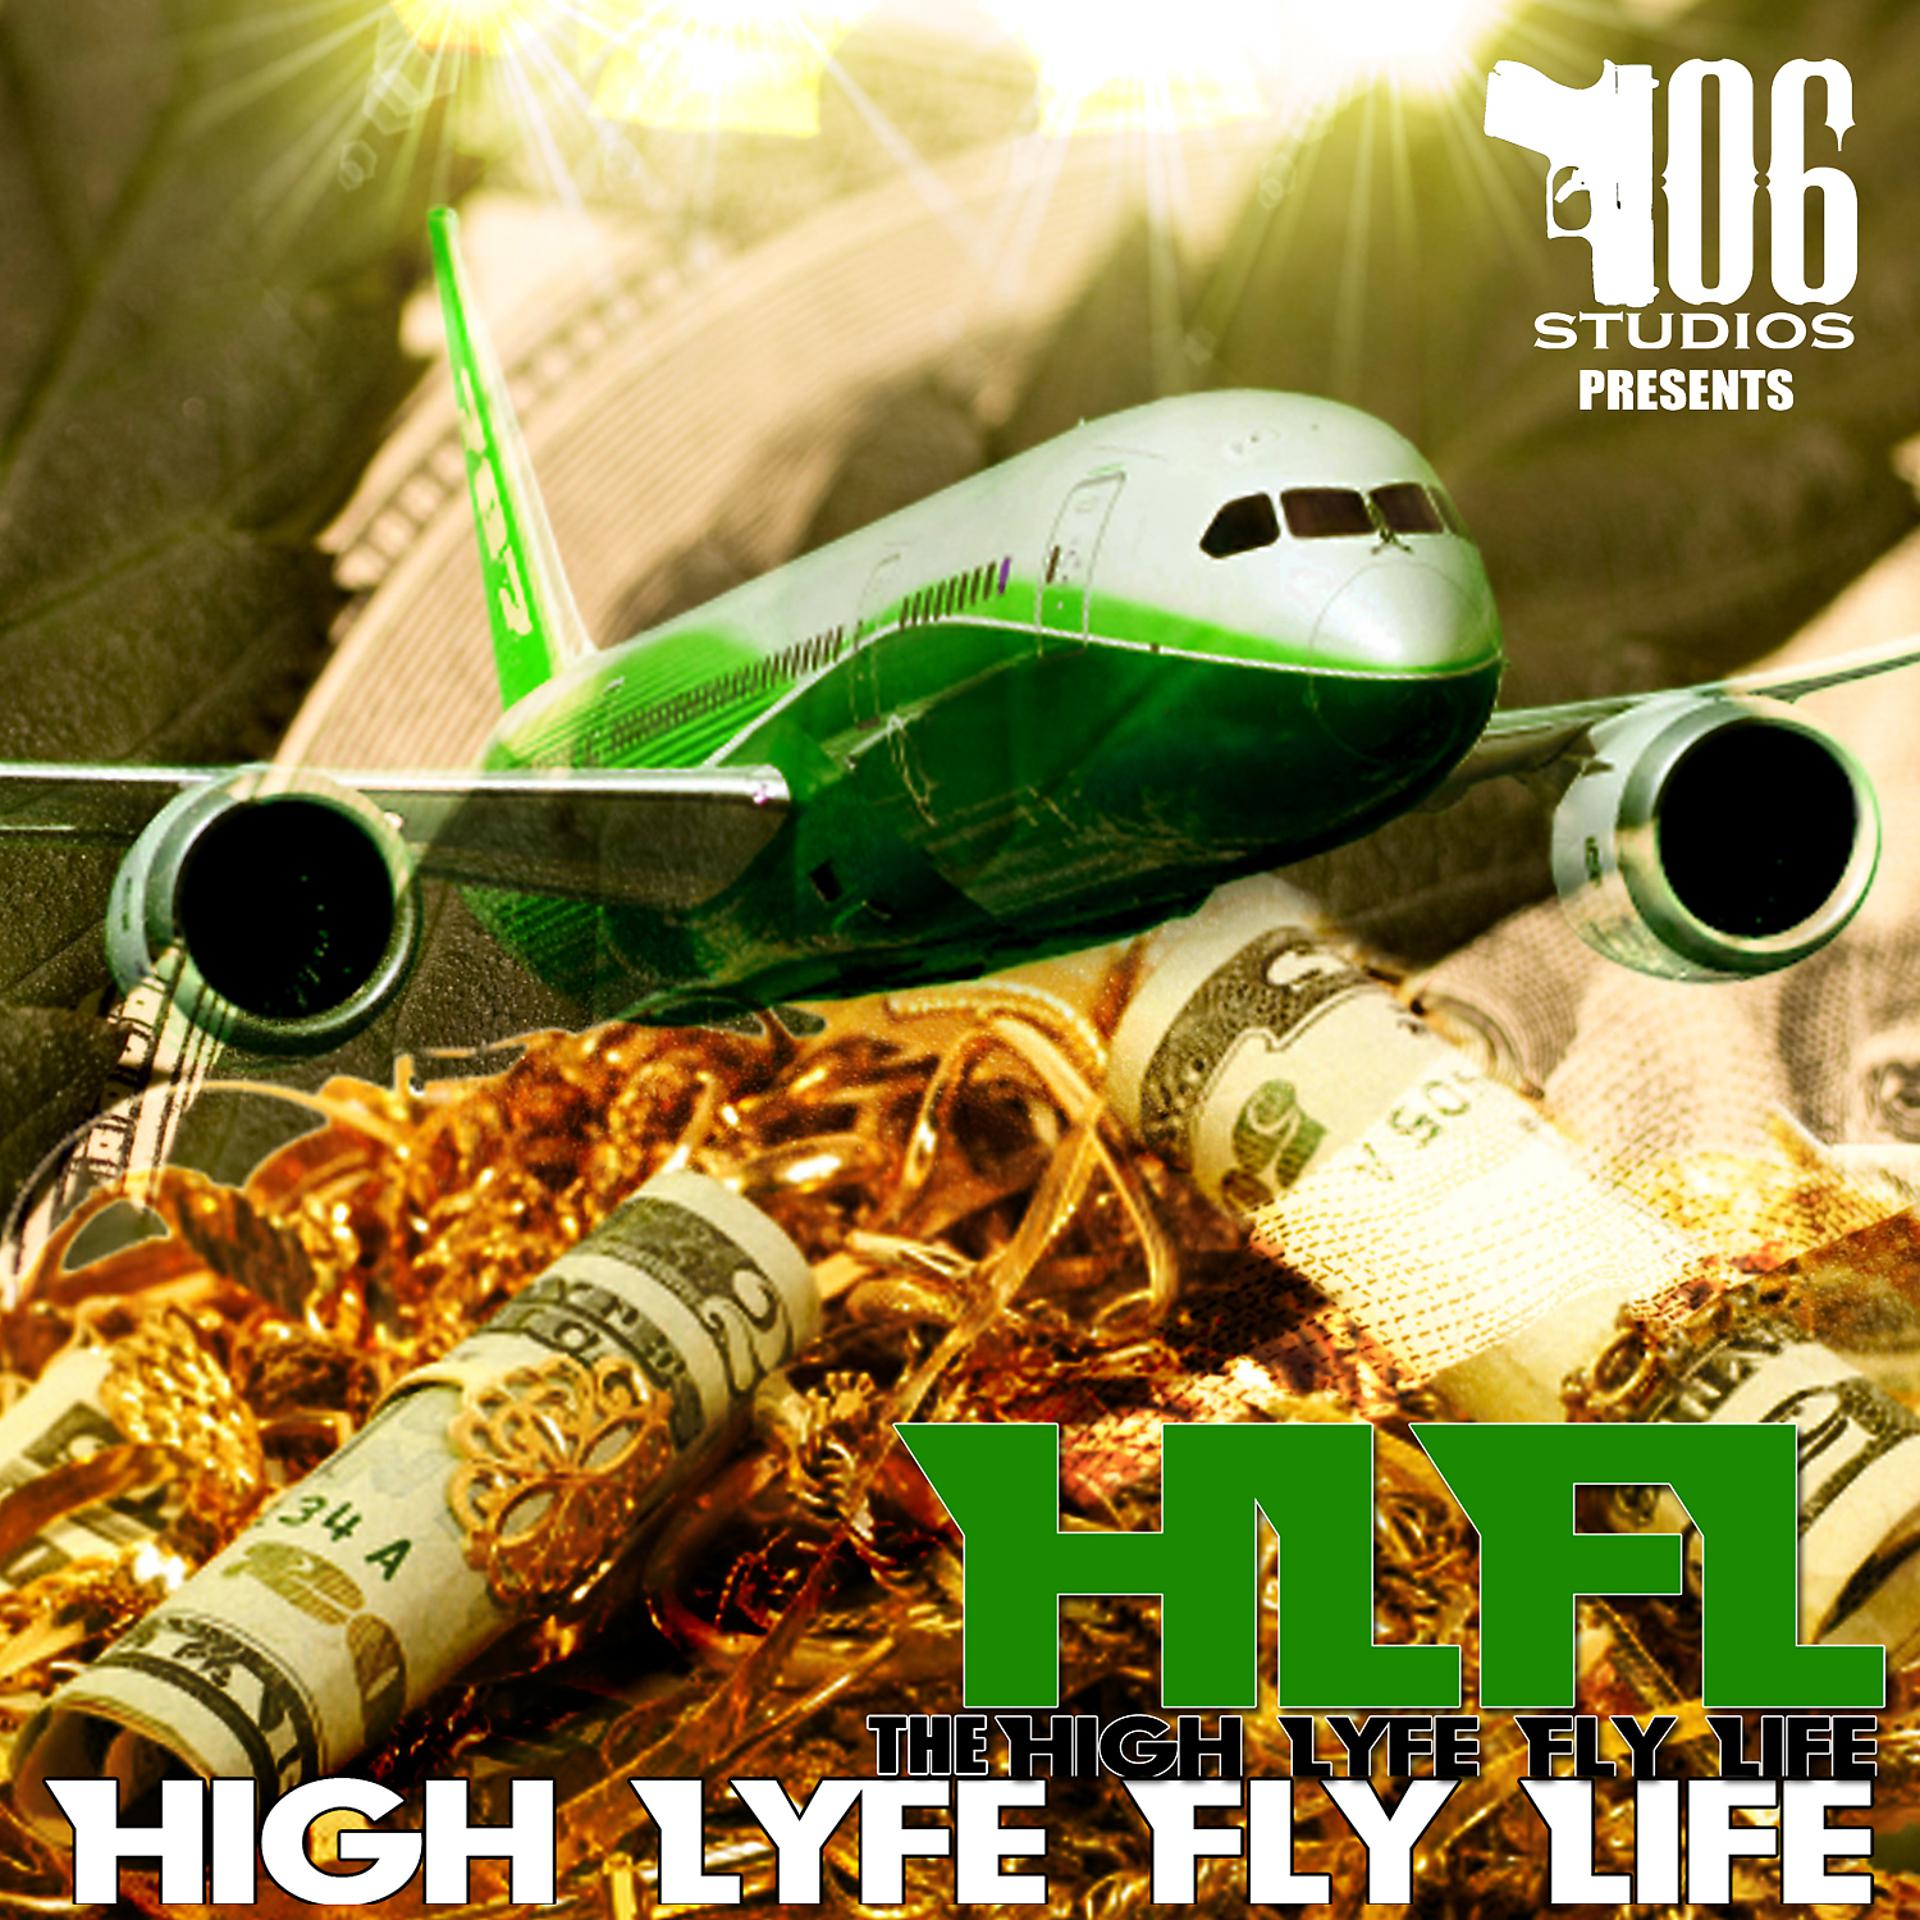 My fly life. Fly High песни. High Life. Fly Life go. Fly my Life.